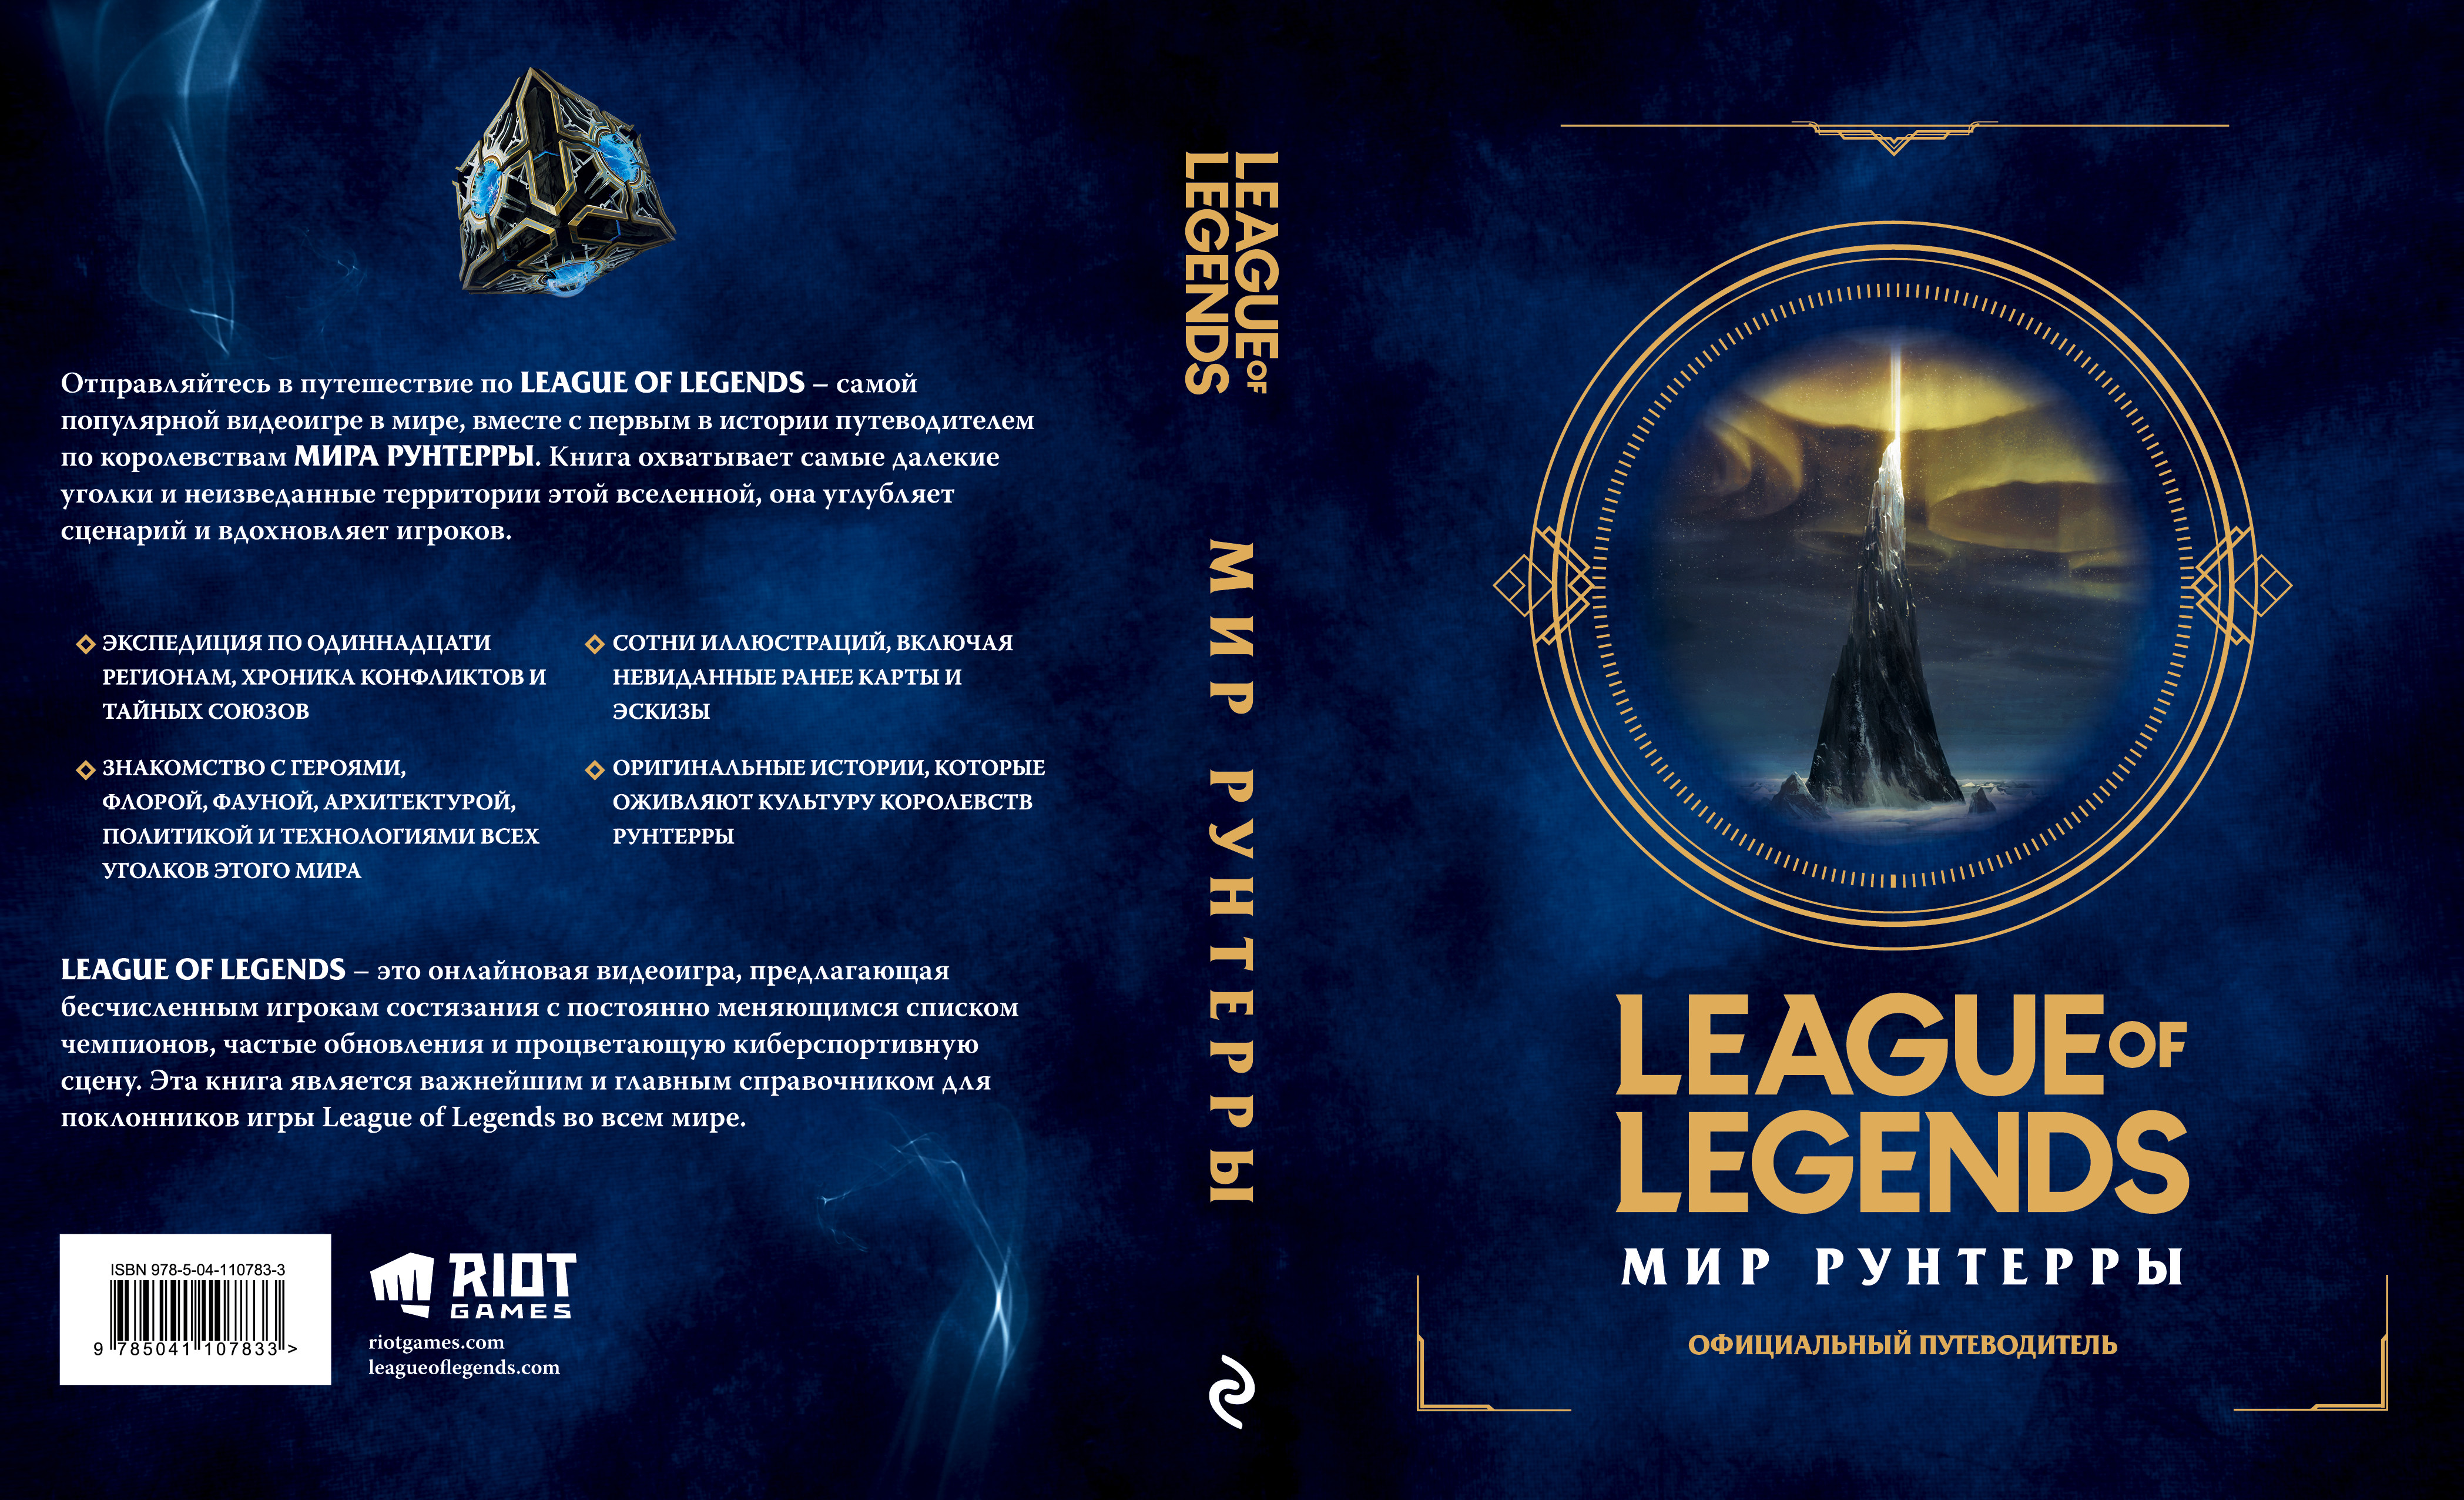 League of Legends - На русском языке стал доступен официальный путеводитель 